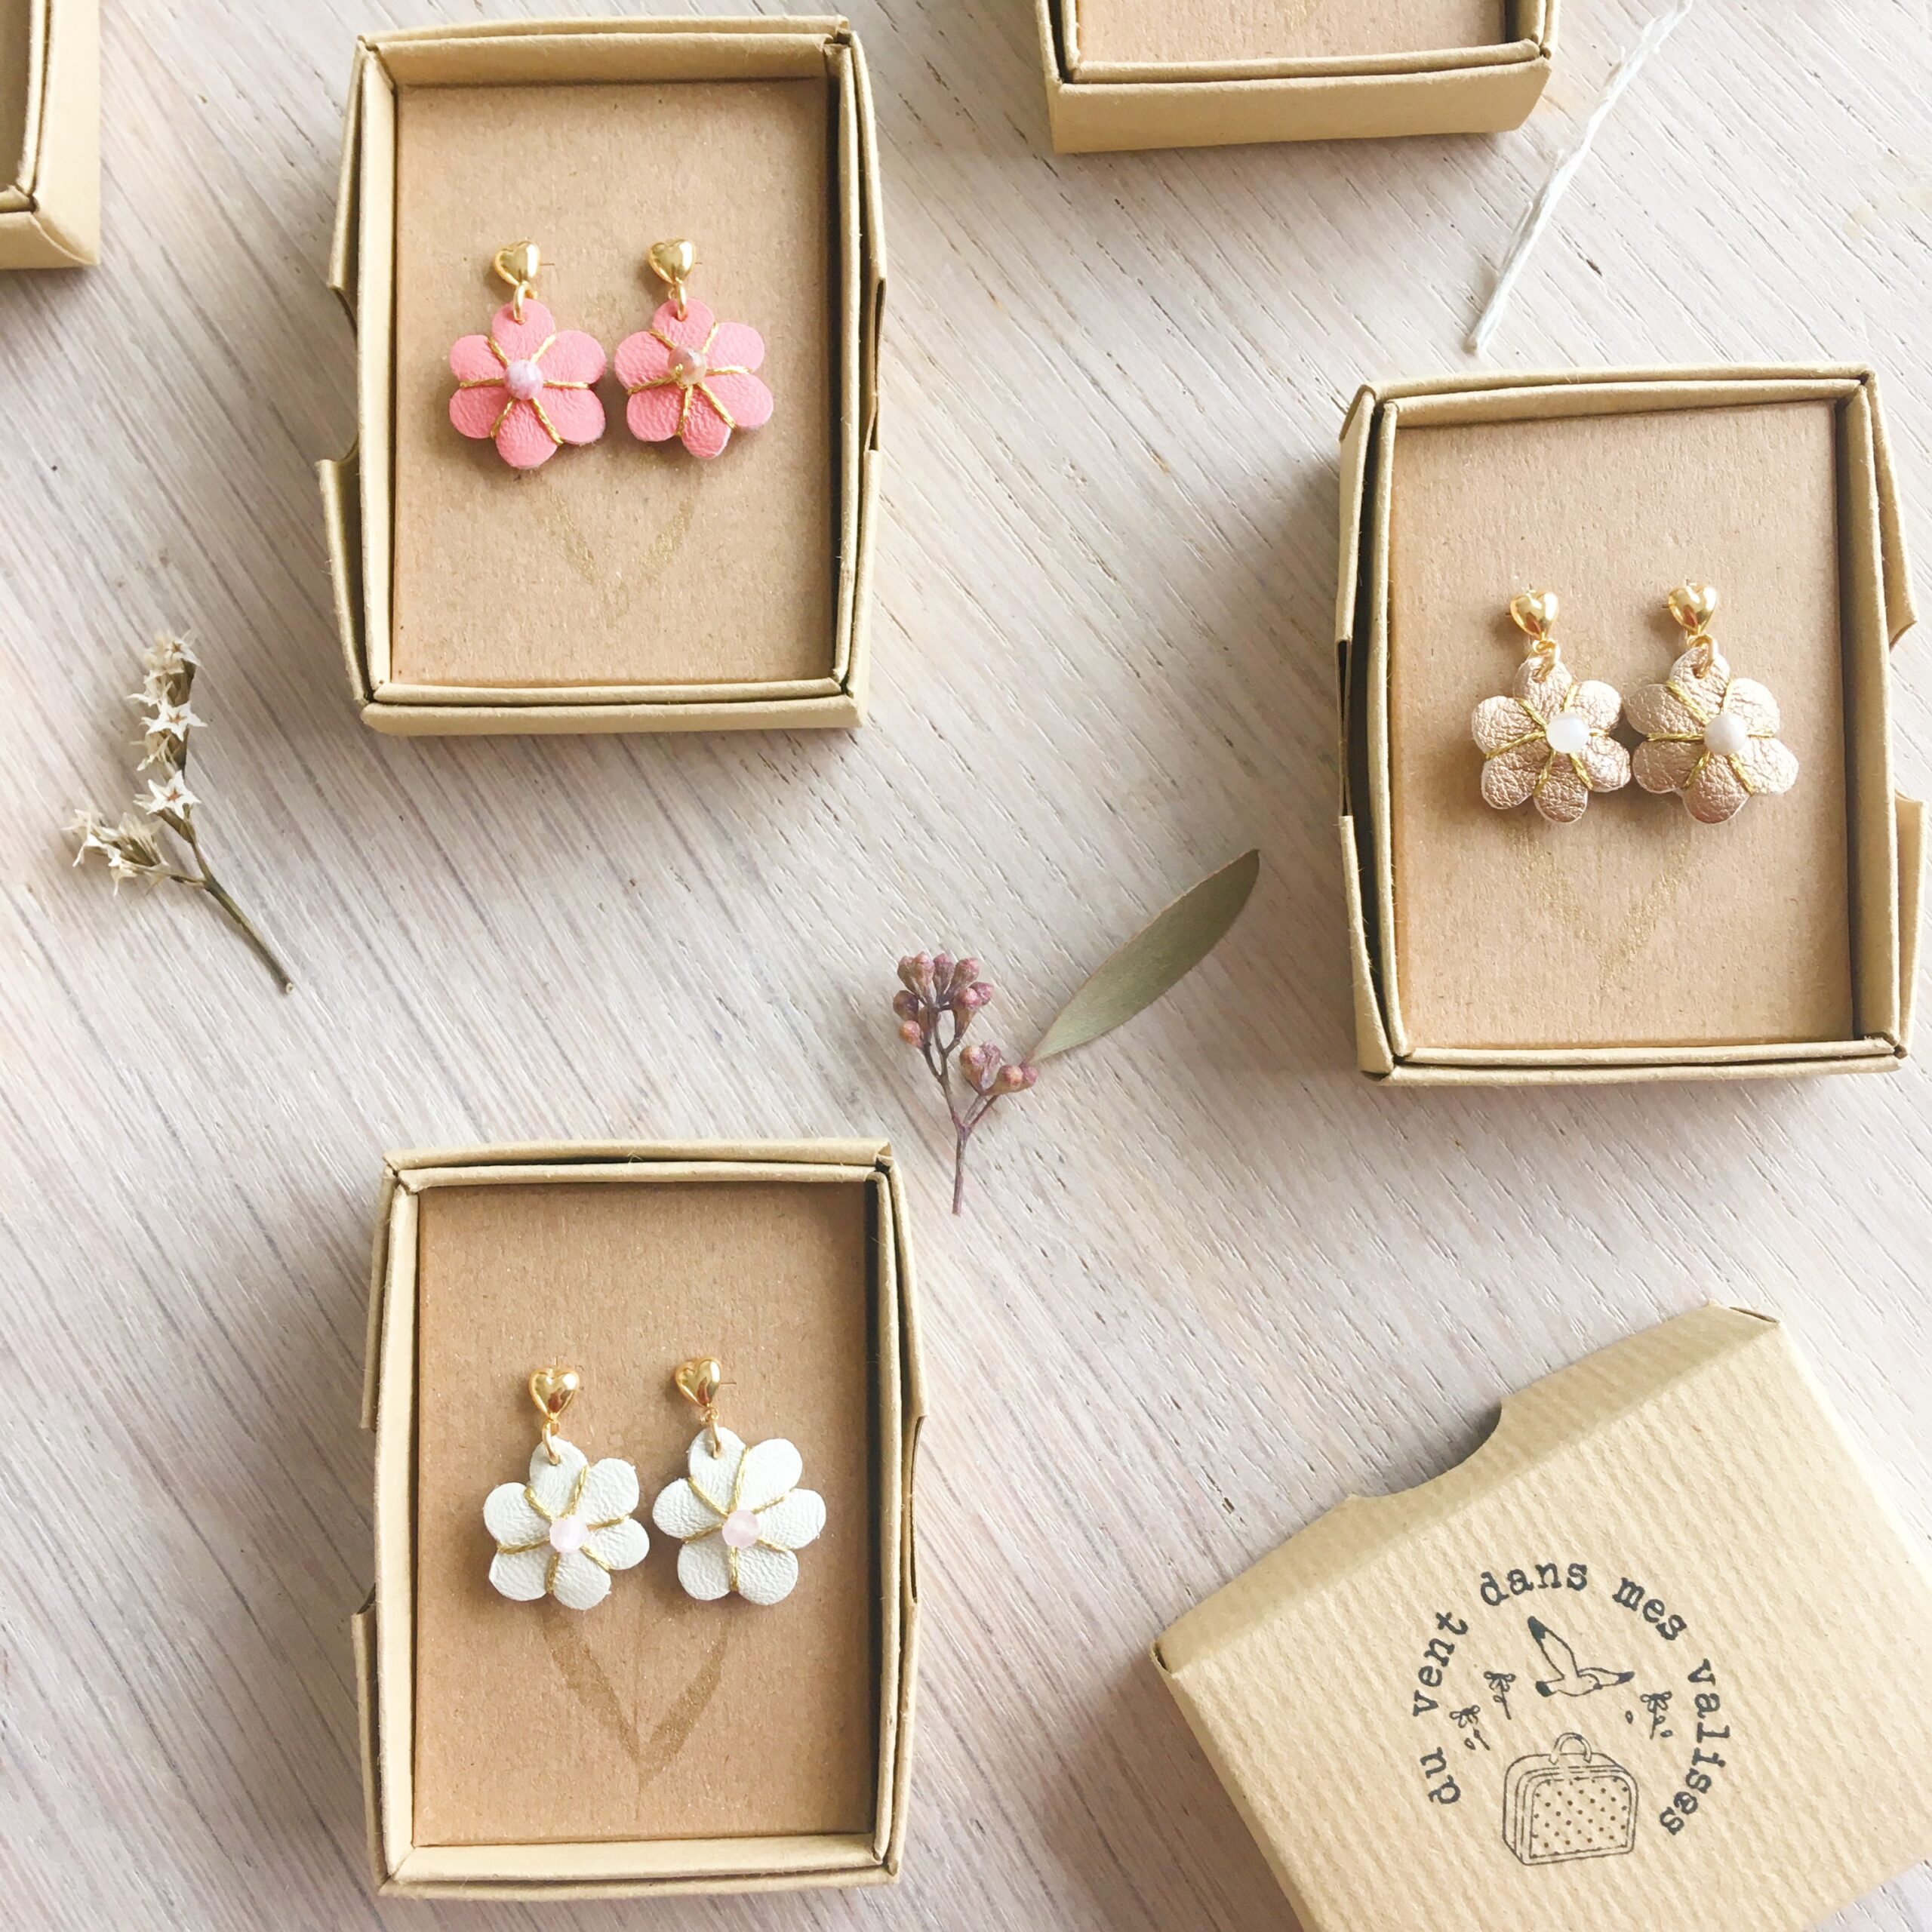 boucles d'oreilles en cuir fleurs brodées main avec perles naturelles et puces dorées à l'or fin made in France - du vent dans mes valises